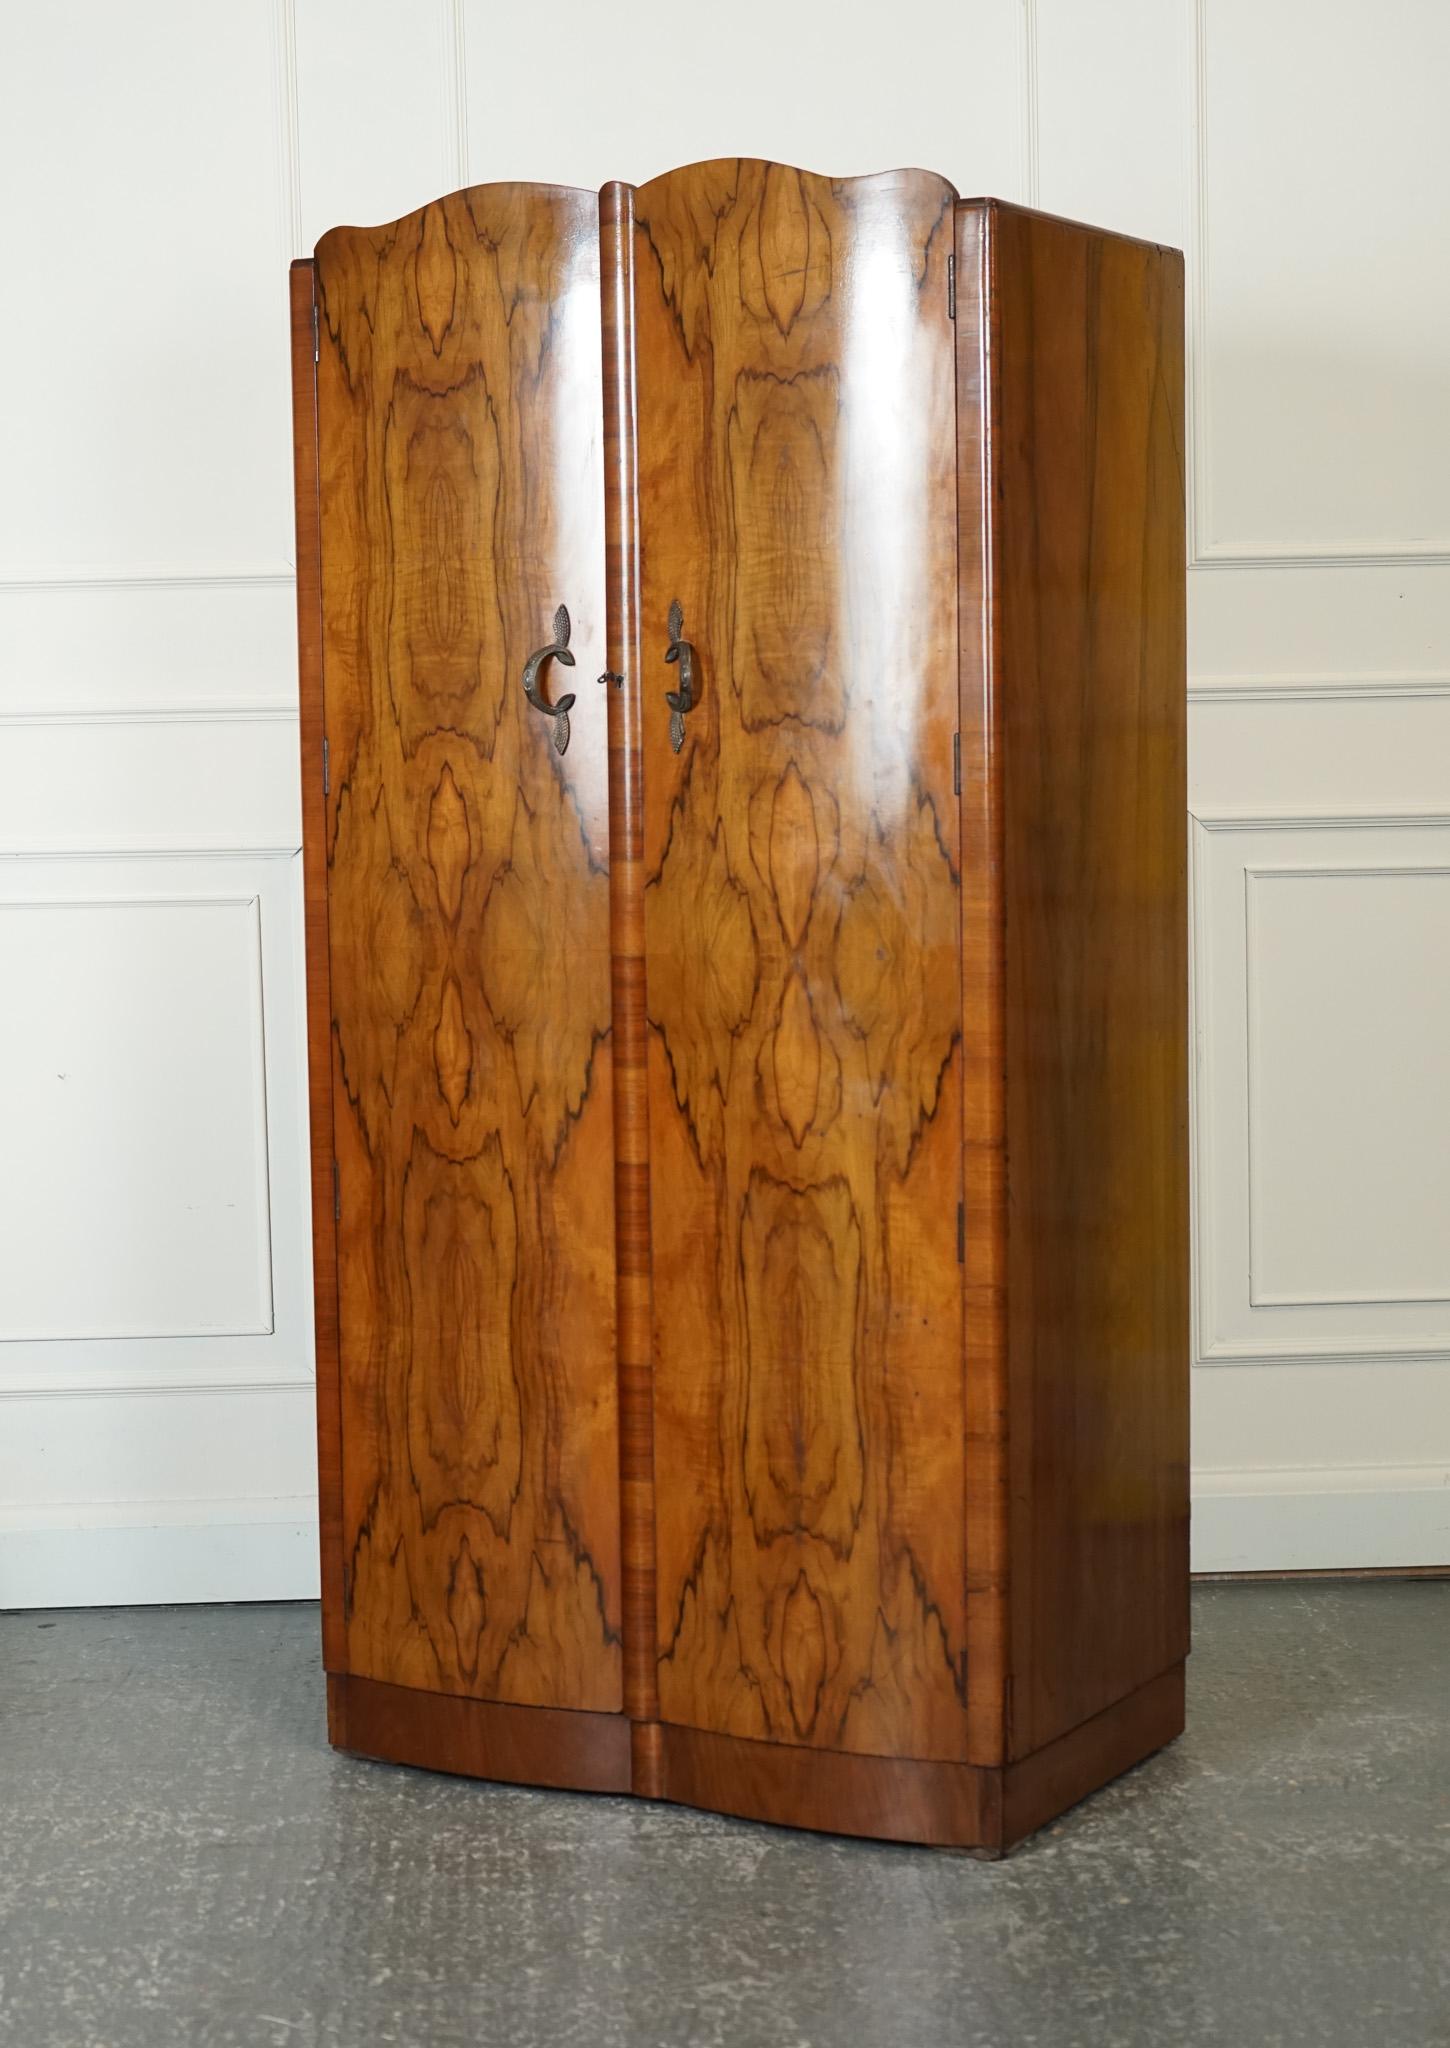 Antiquitäten aus London



Wir freuen uns, diesen großen Art Deco Doppelschrank aus Wurzelnussholz aus den 1920er Jahren zum Verkauf anzubieten.

Dieser große Doppelschrank aus Wurzelnussholz ist ein atemberaubendes Beispiel für das Art-déco-Design